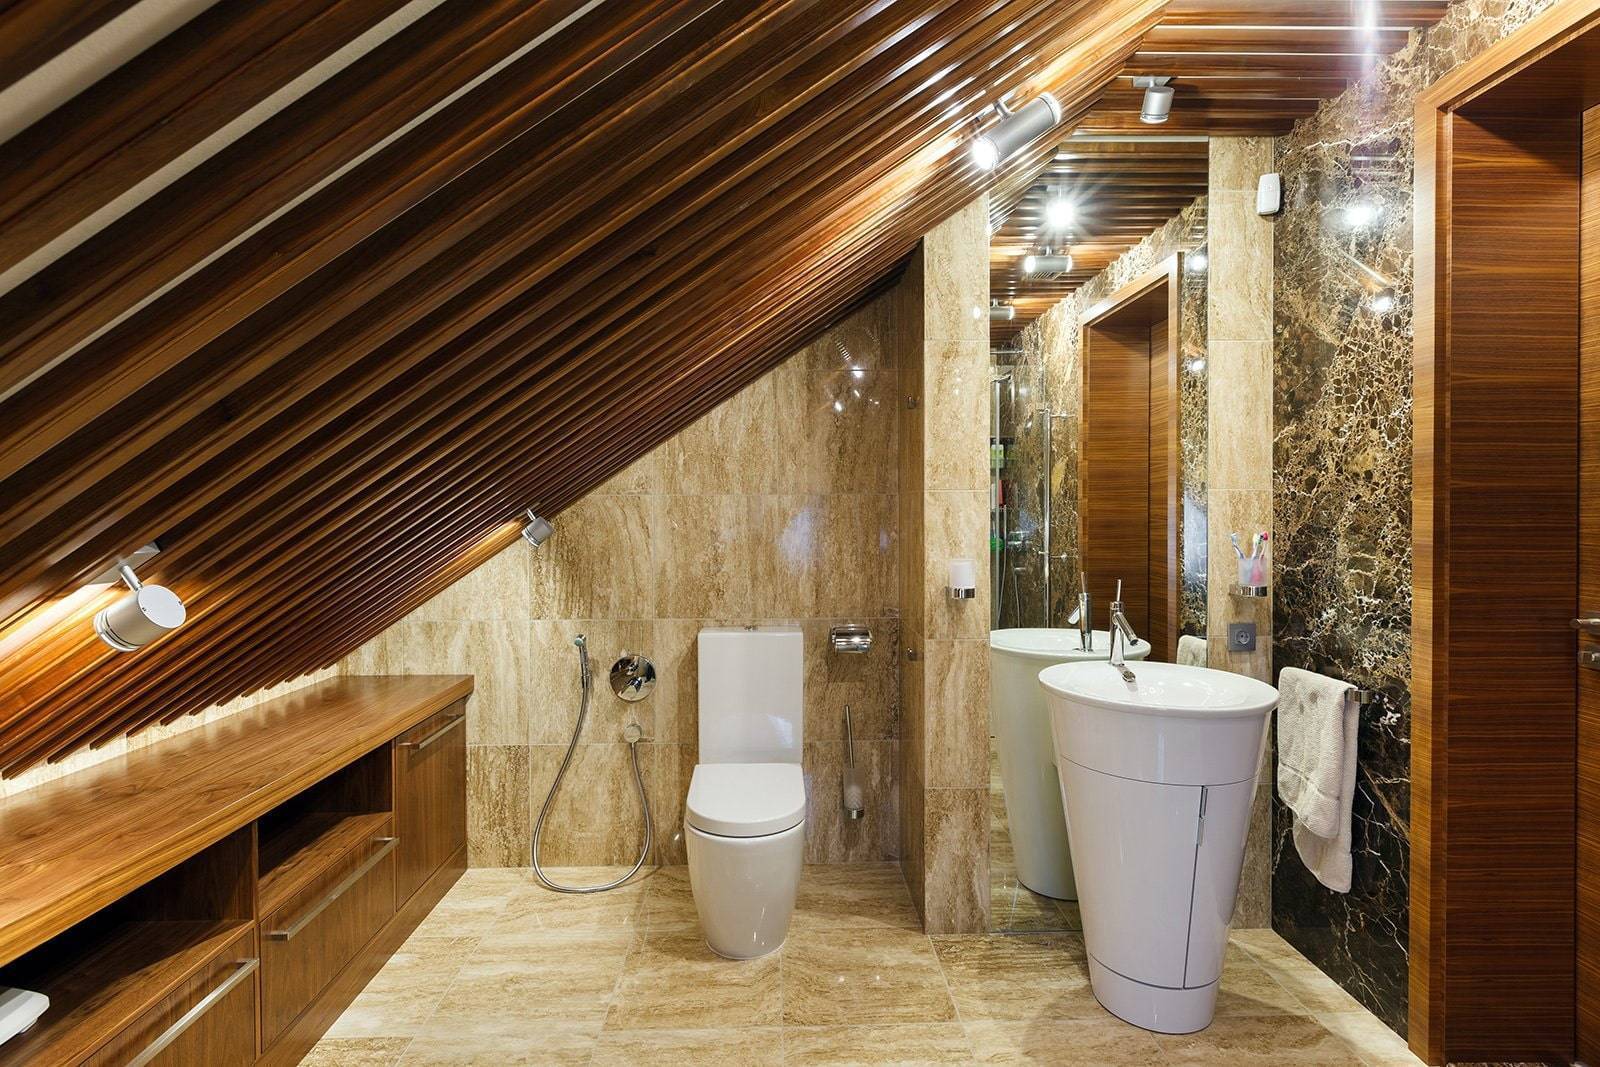 22 материала для отделки ванной комнаты: стены, пол и потолок